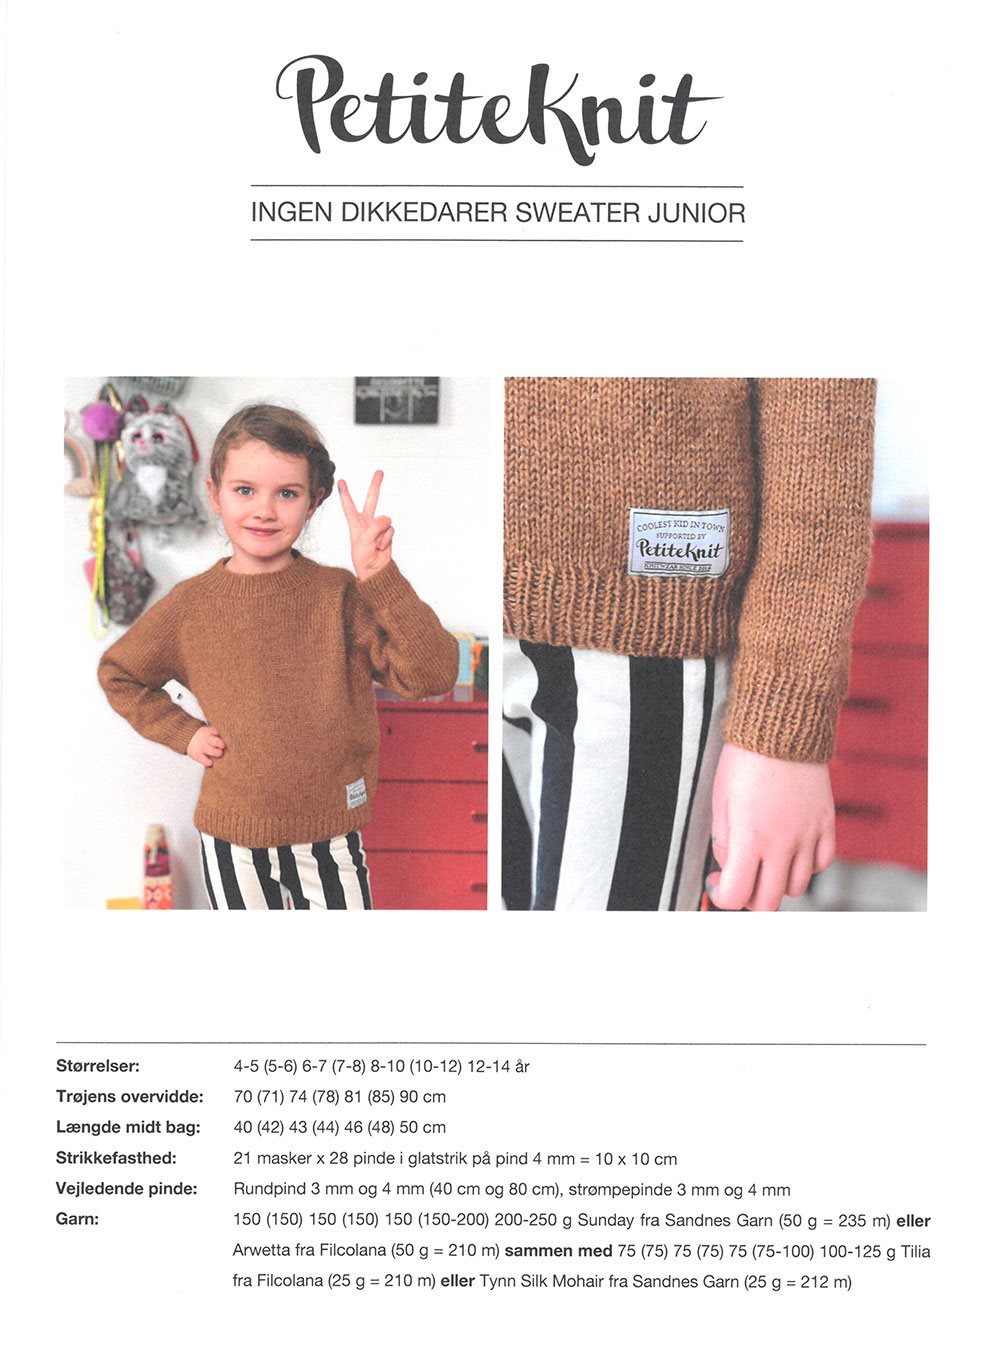 Behandle ukuelige der Ingen Dikkedarer sweater junior